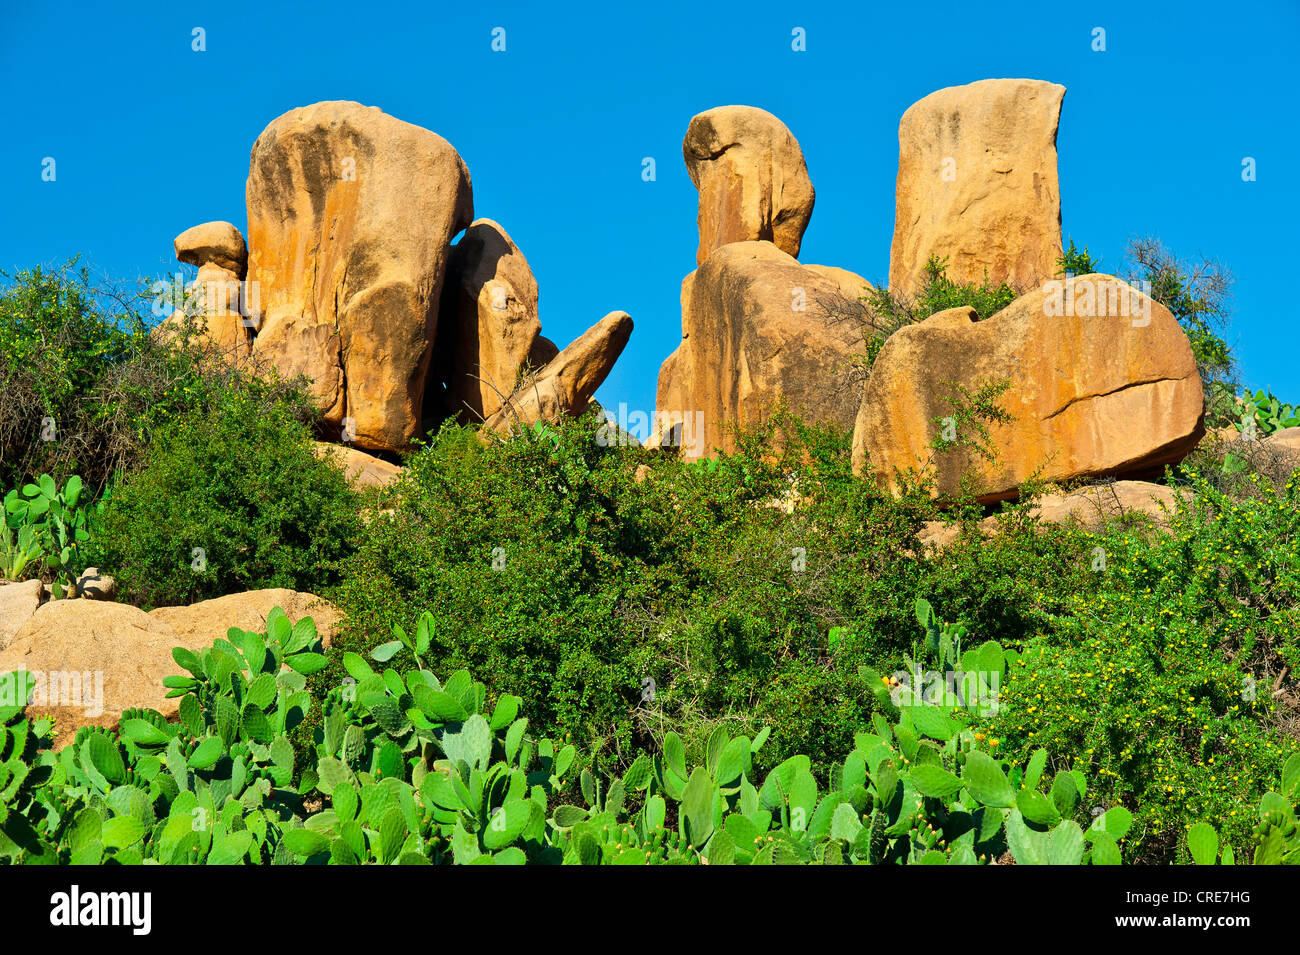 Riesige Granitfelsen, kleine Bäume in Arganöl (Argania Spinosa) und Feigenkaktus (Opuntia Ficus Indica) im Anti-Atlas-Gebirge Stockfoto